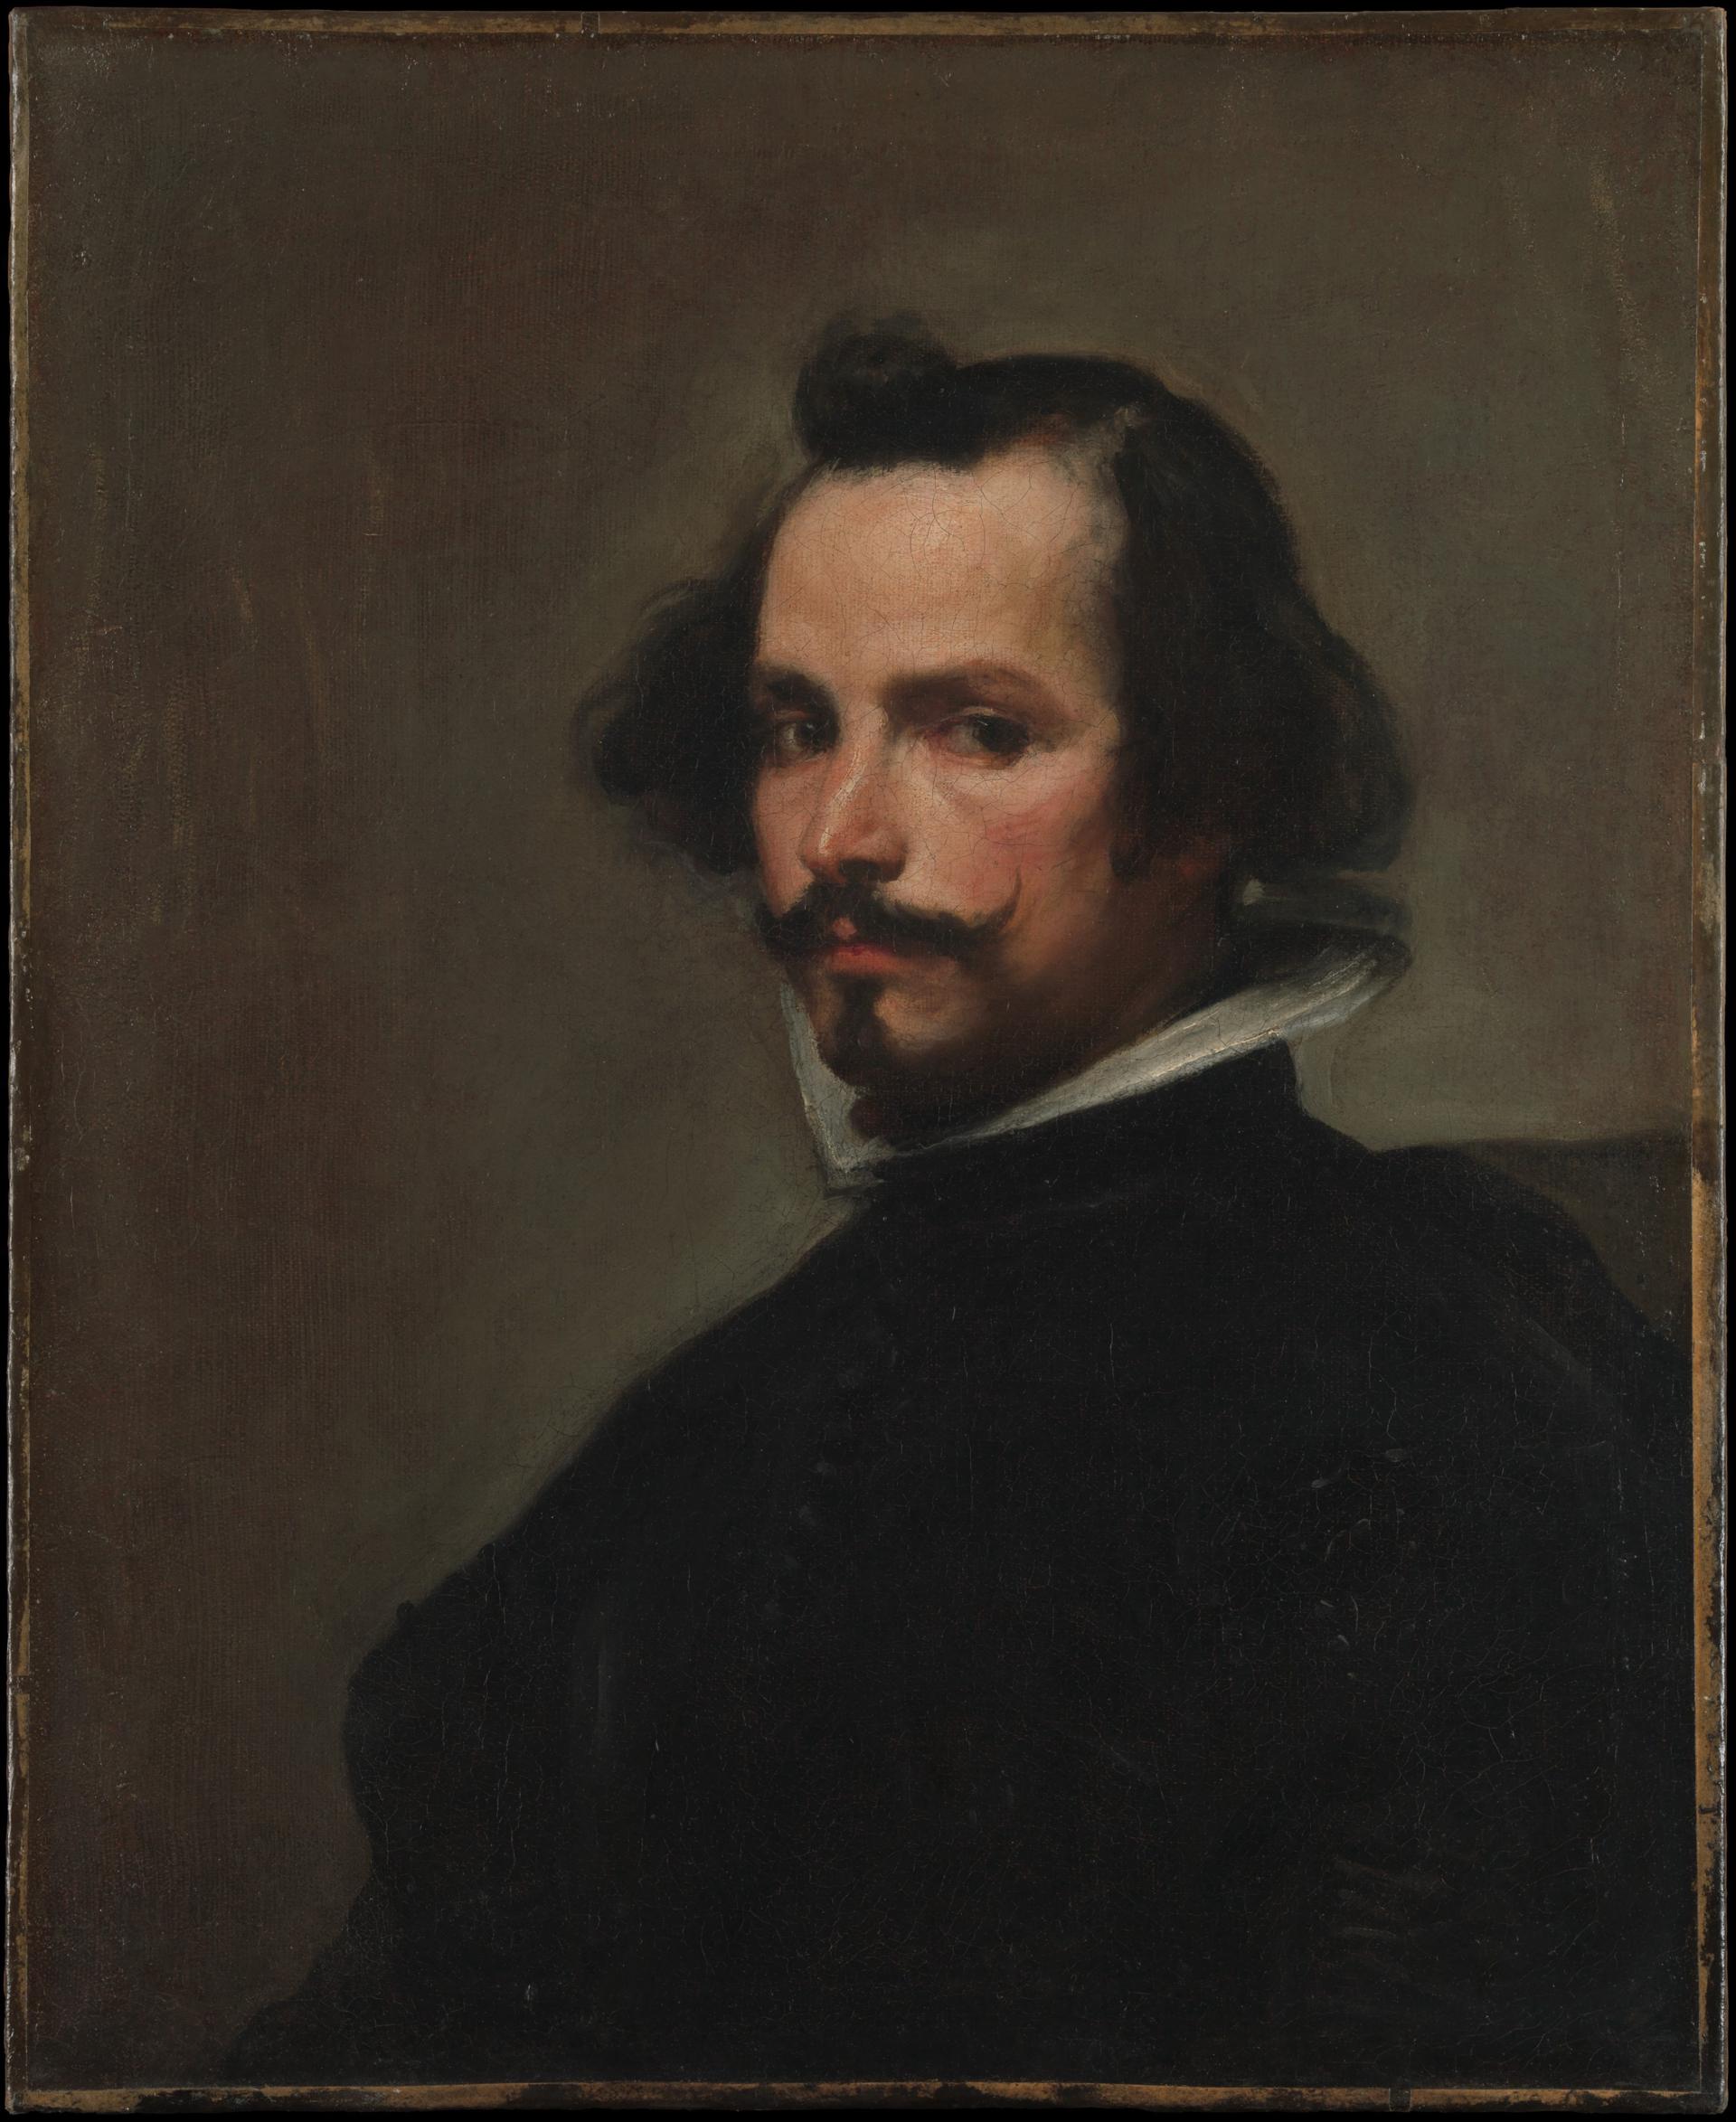 0042_委拉斯开兹_委拉斯开兹绘画作品集-Portrait of a Man-Velazquez Diego Rodriguez de Silva 1599–1660 Madrid2_3163x3866PX_TIF_150DPI_35_0